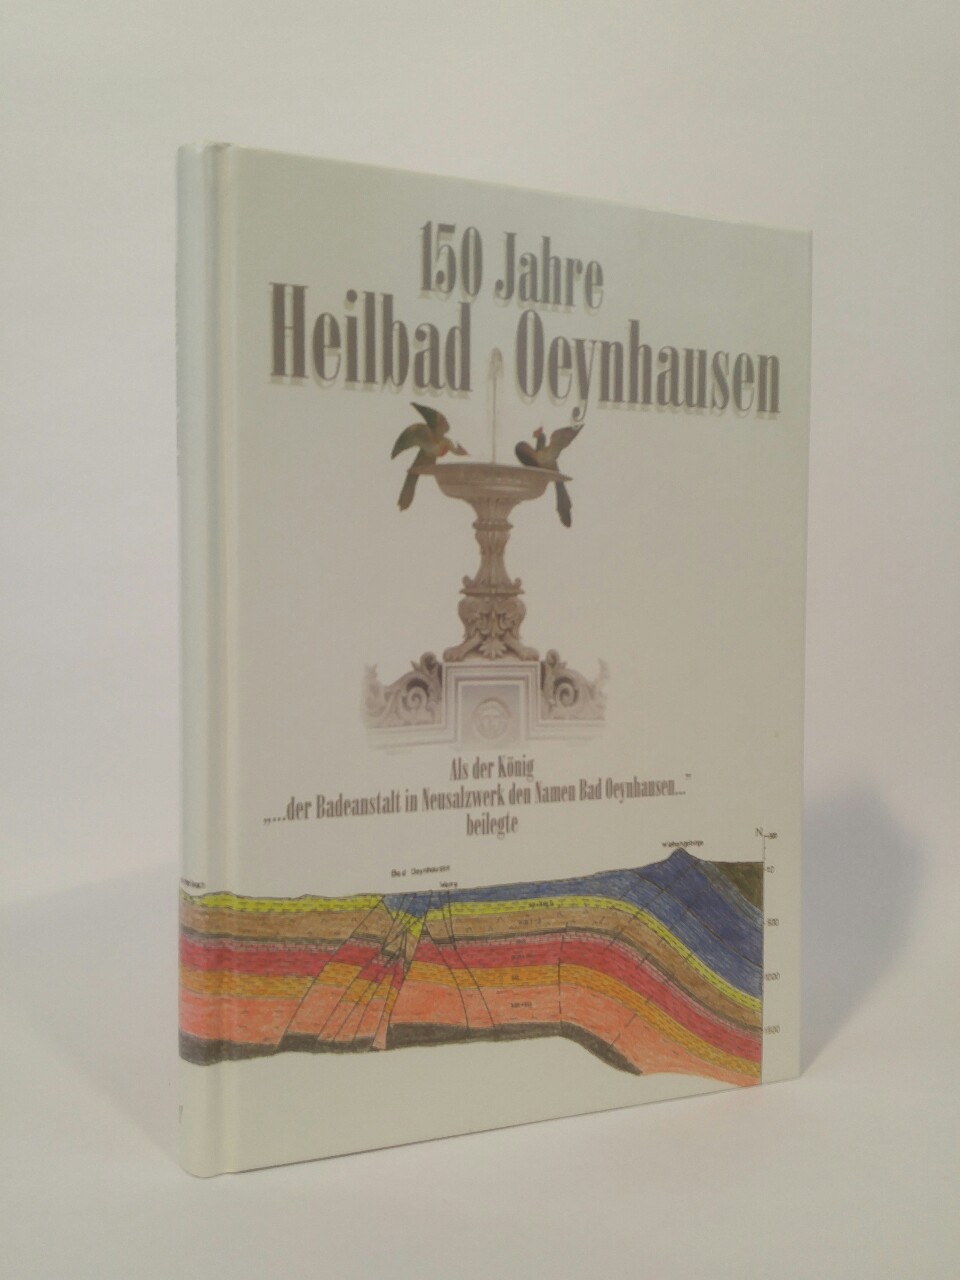 150 Jahre Heilbad Oeynhausen.  [Neubuch] Als der König 